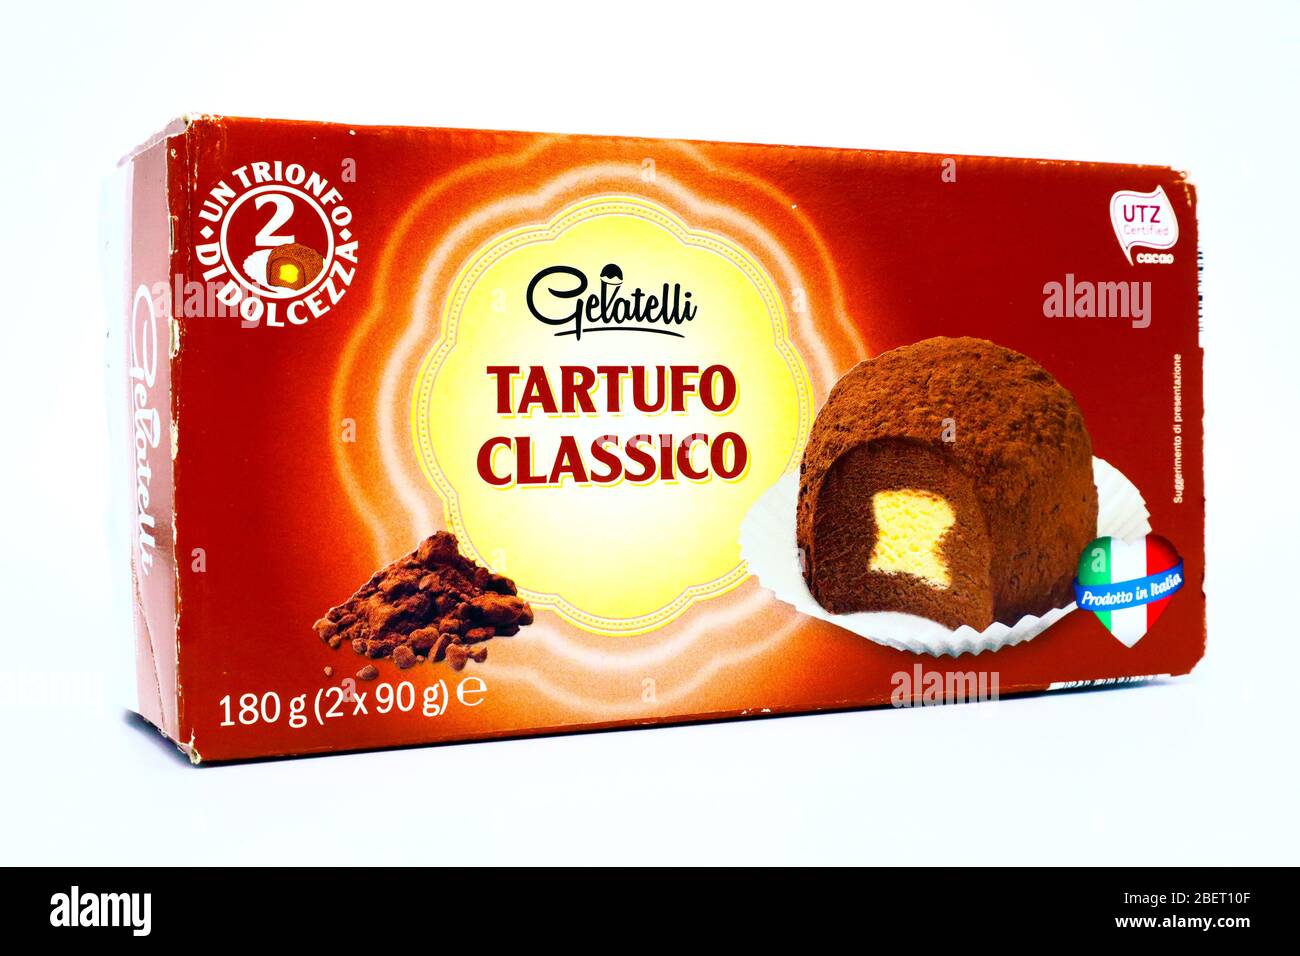 Gelato al tartufo al cioccolato Gelatelli venduto dalla catena LIDL  Supermarket Foto stock - Alamy